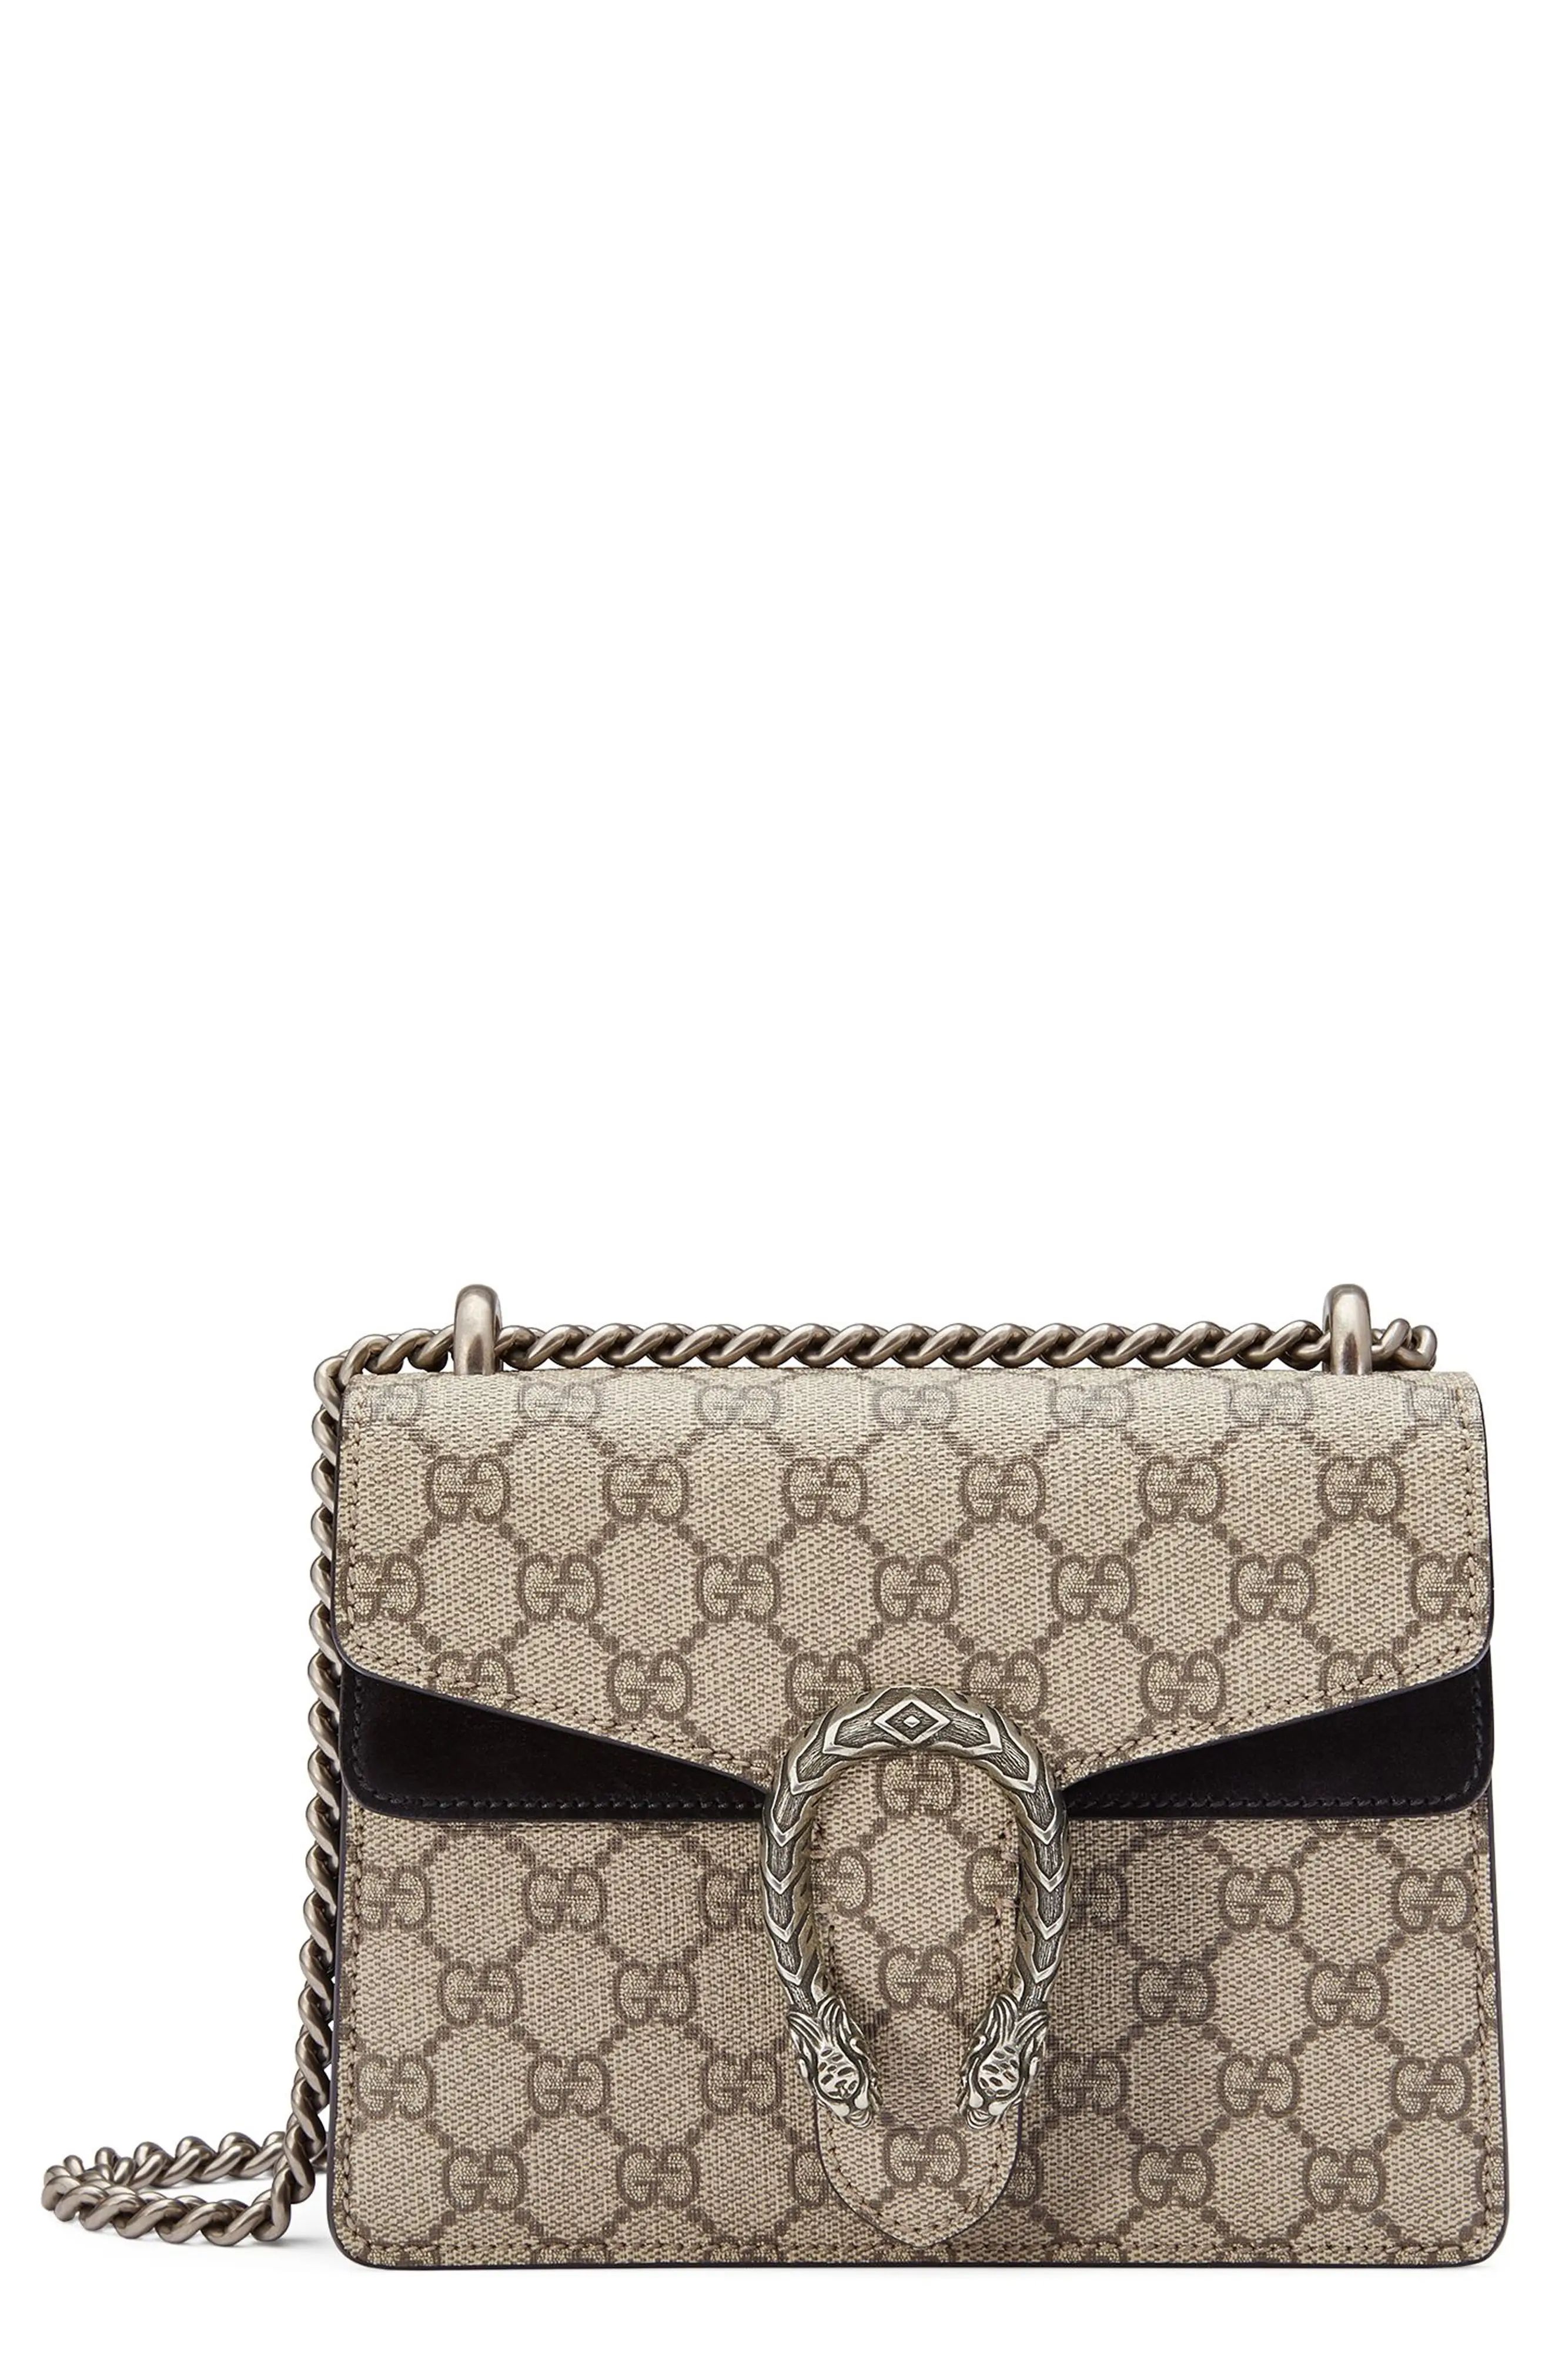 Gucci Mini Dionysus Gg Supreme Shoulder Bag - Beige | Nordstrom